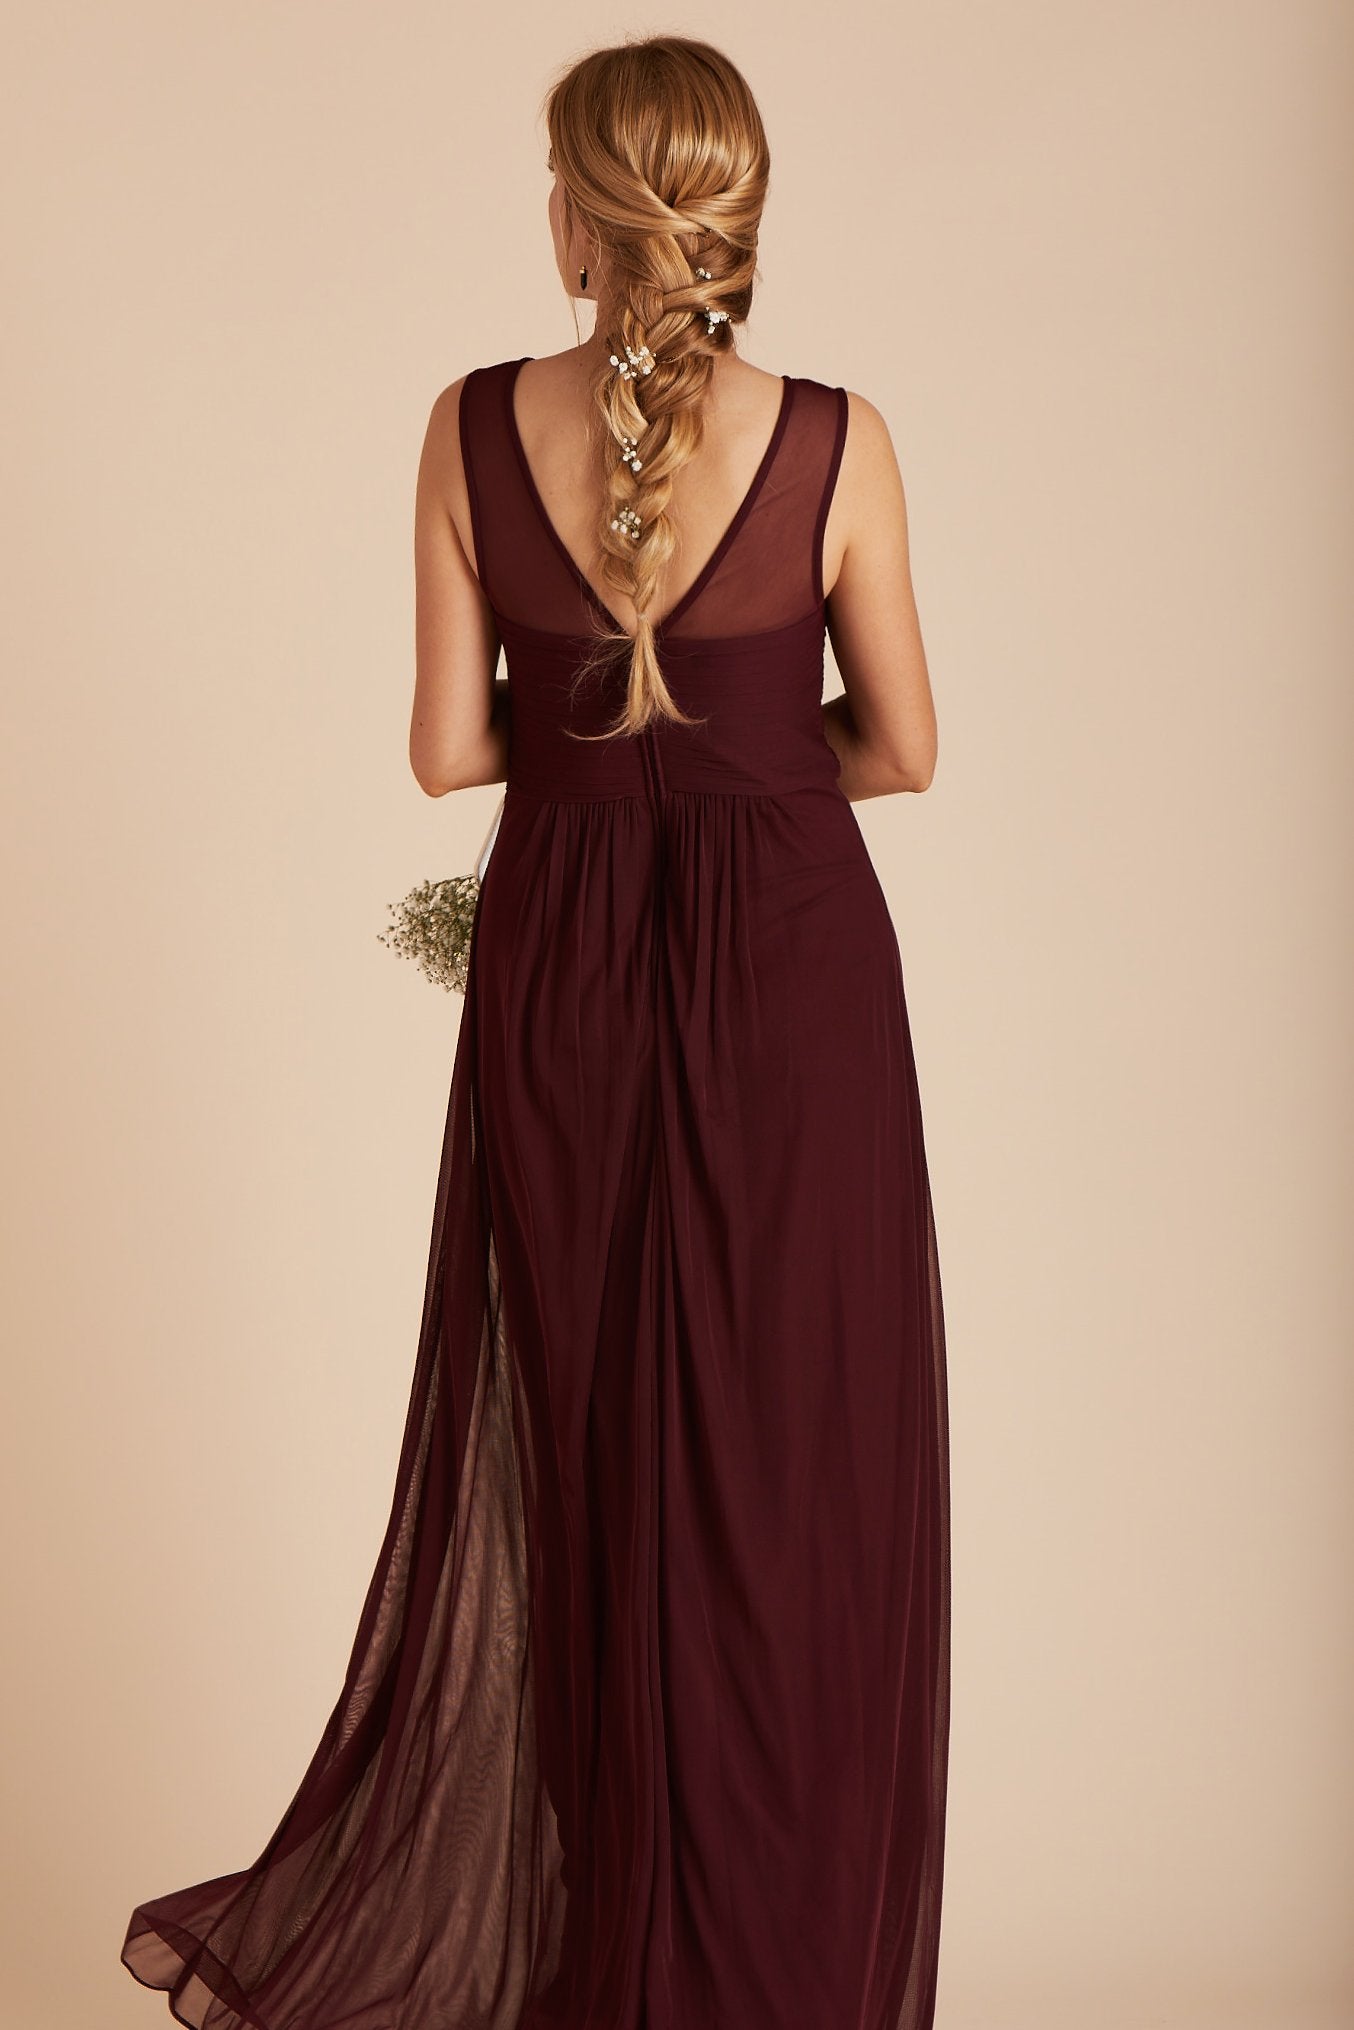 Ryan bridesmaid dress in cabernet burgundy chiffon by Birdy Grey, back view